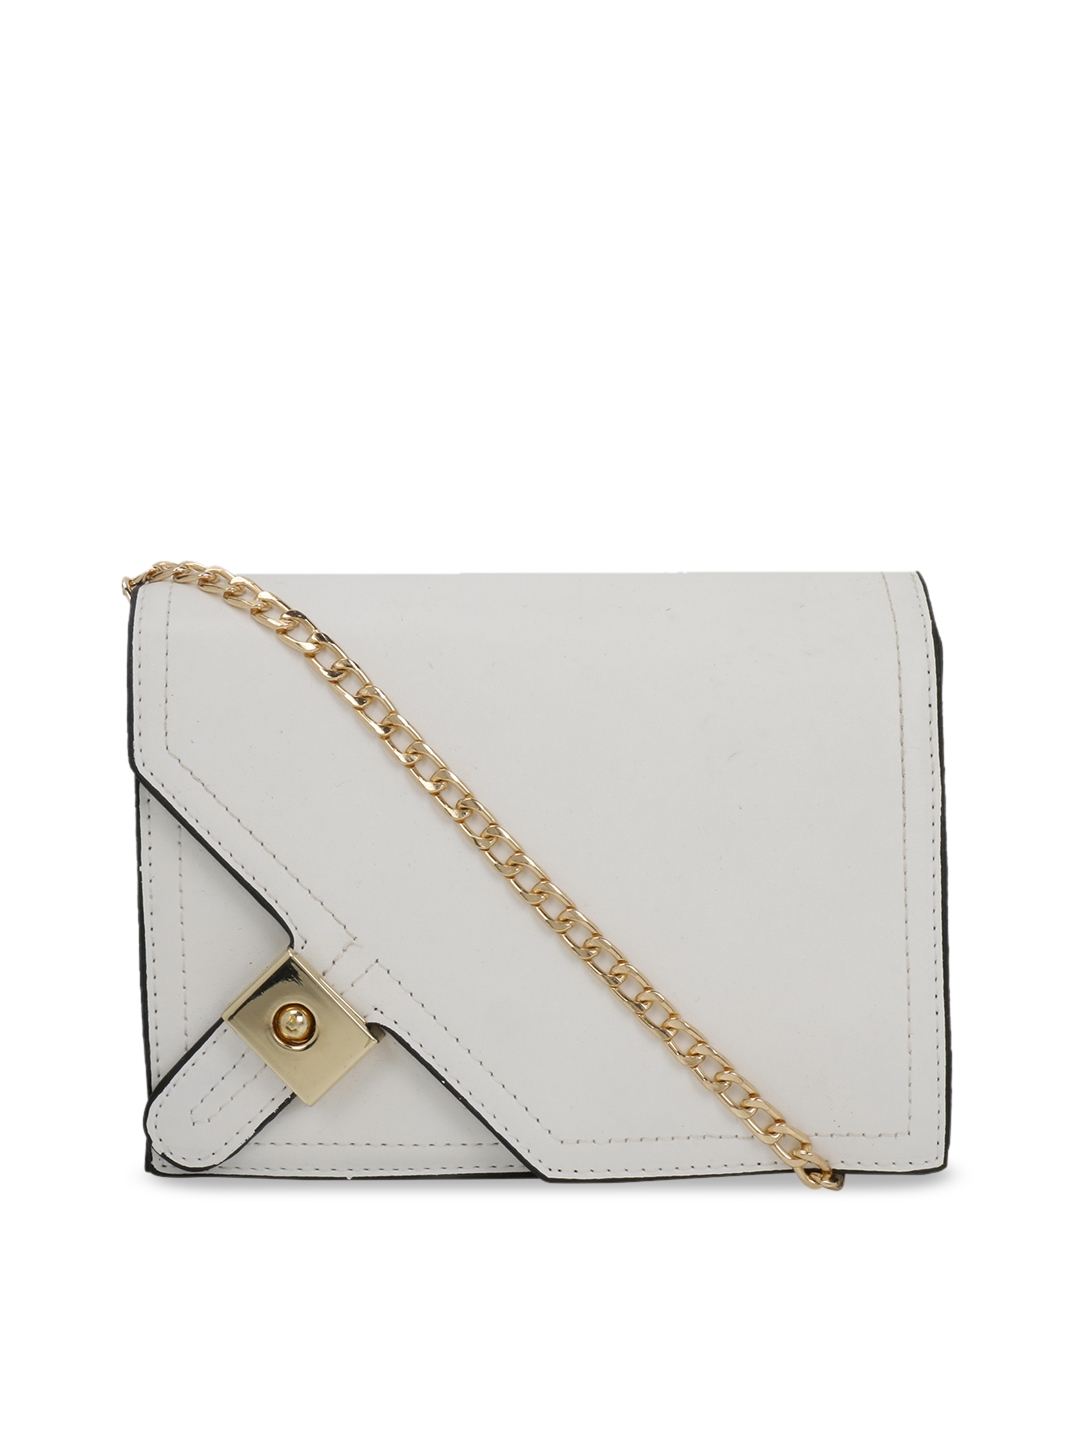 Buy Satchel Bags White Solid Sling Bag - Handbags for Women 10390773 ...